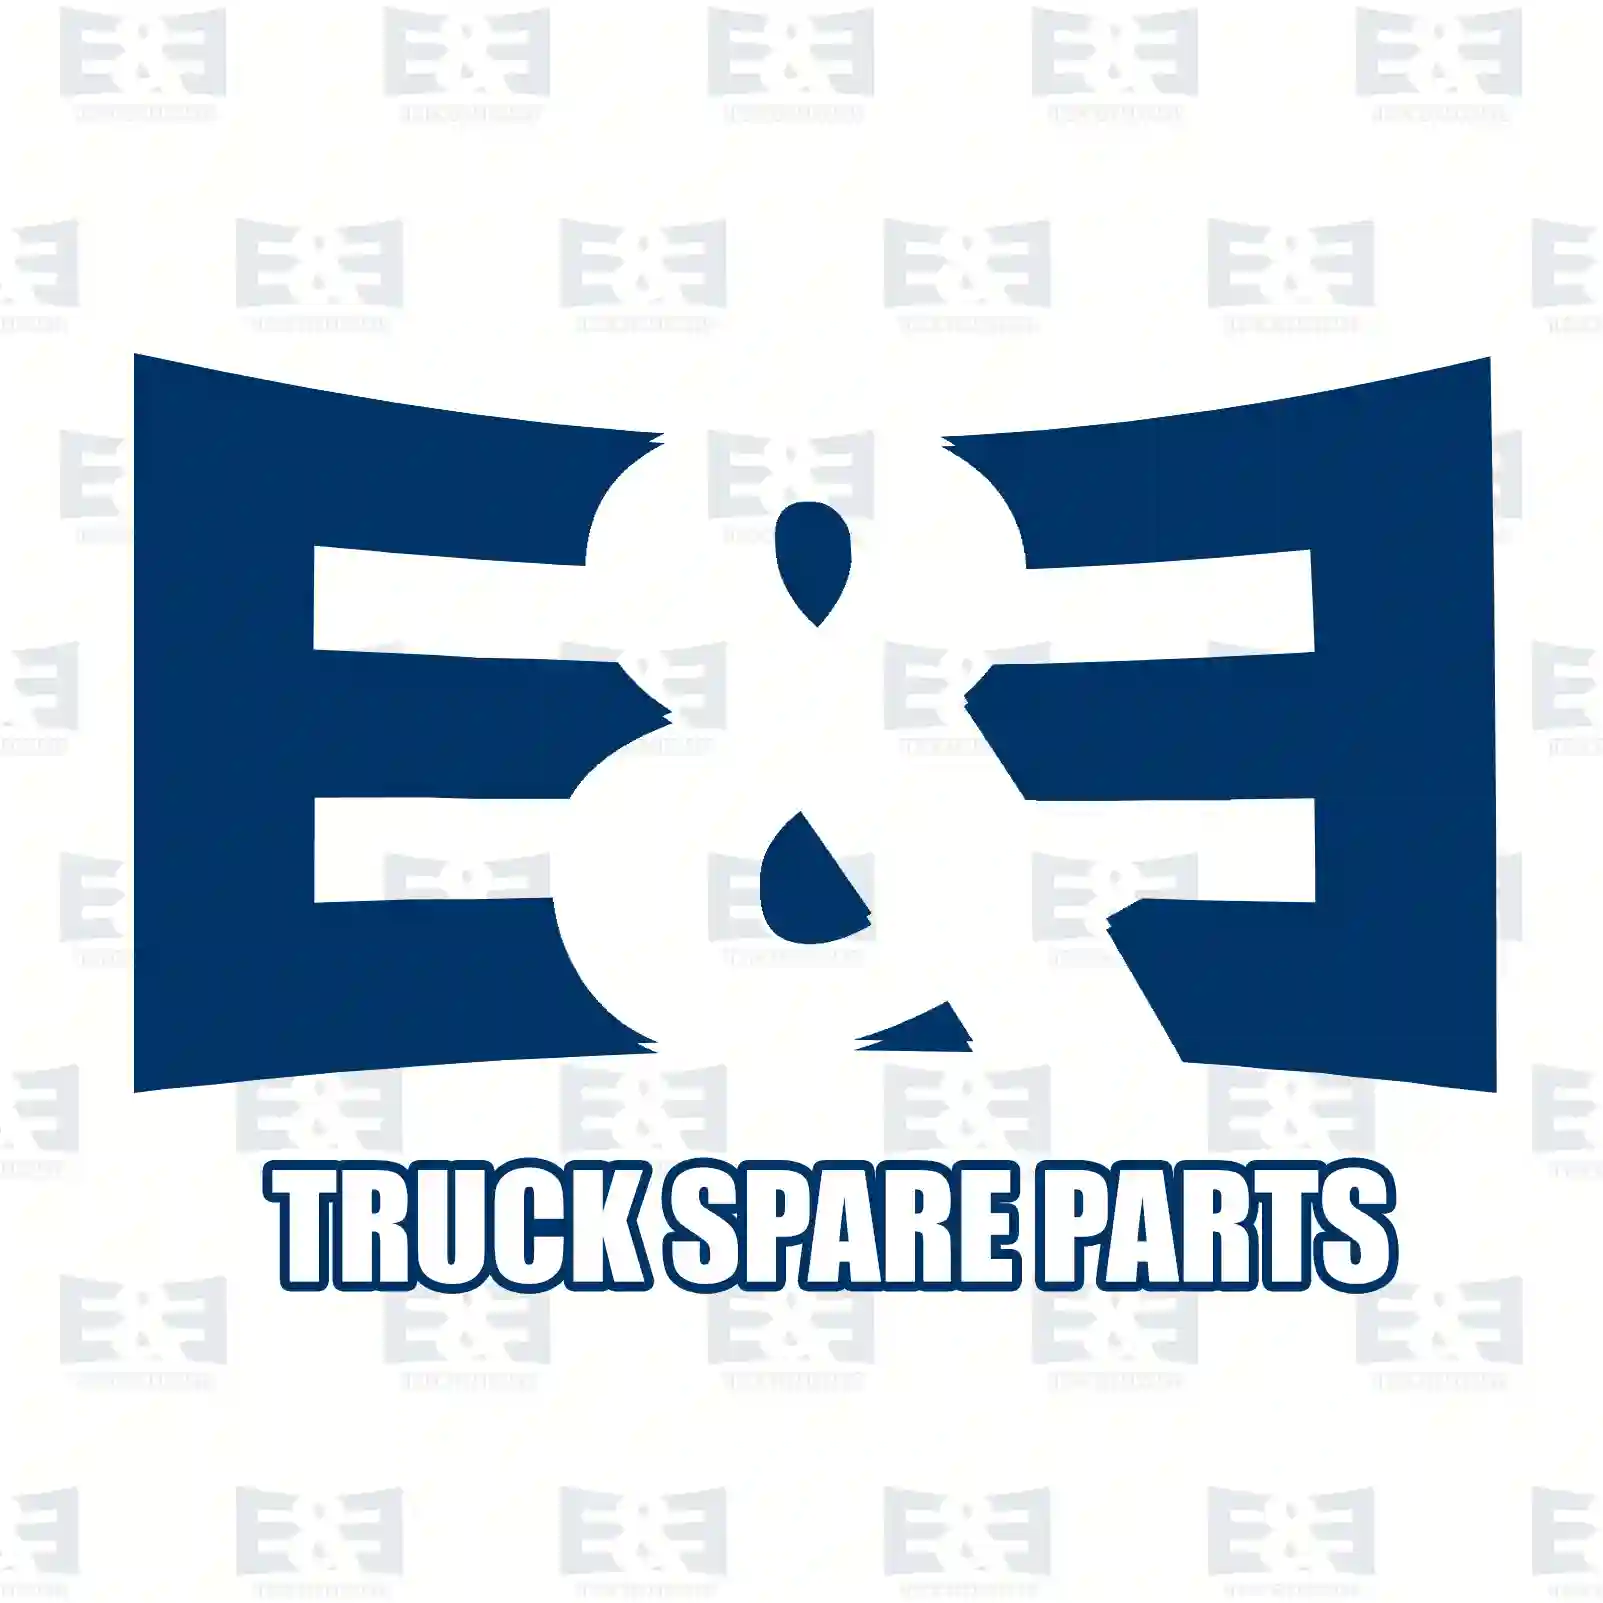 Brake disc, 2E2296310, 93168942, 93168942, 43206-00Q0C, 4421180, 432067943R, , , , ||  2E2296310 E&E Truck Spare Parts | Truck Spare Parts, Auotomotive Spare Parts Brake disc, 2E2296310, 93168942, 93168942, 43206-00Q0C, 4421180, 432067943R, , , , ||  2E2296310 E&E Truck Spare Parts | Truck Spare Parts, Auotomotive Spare Parts